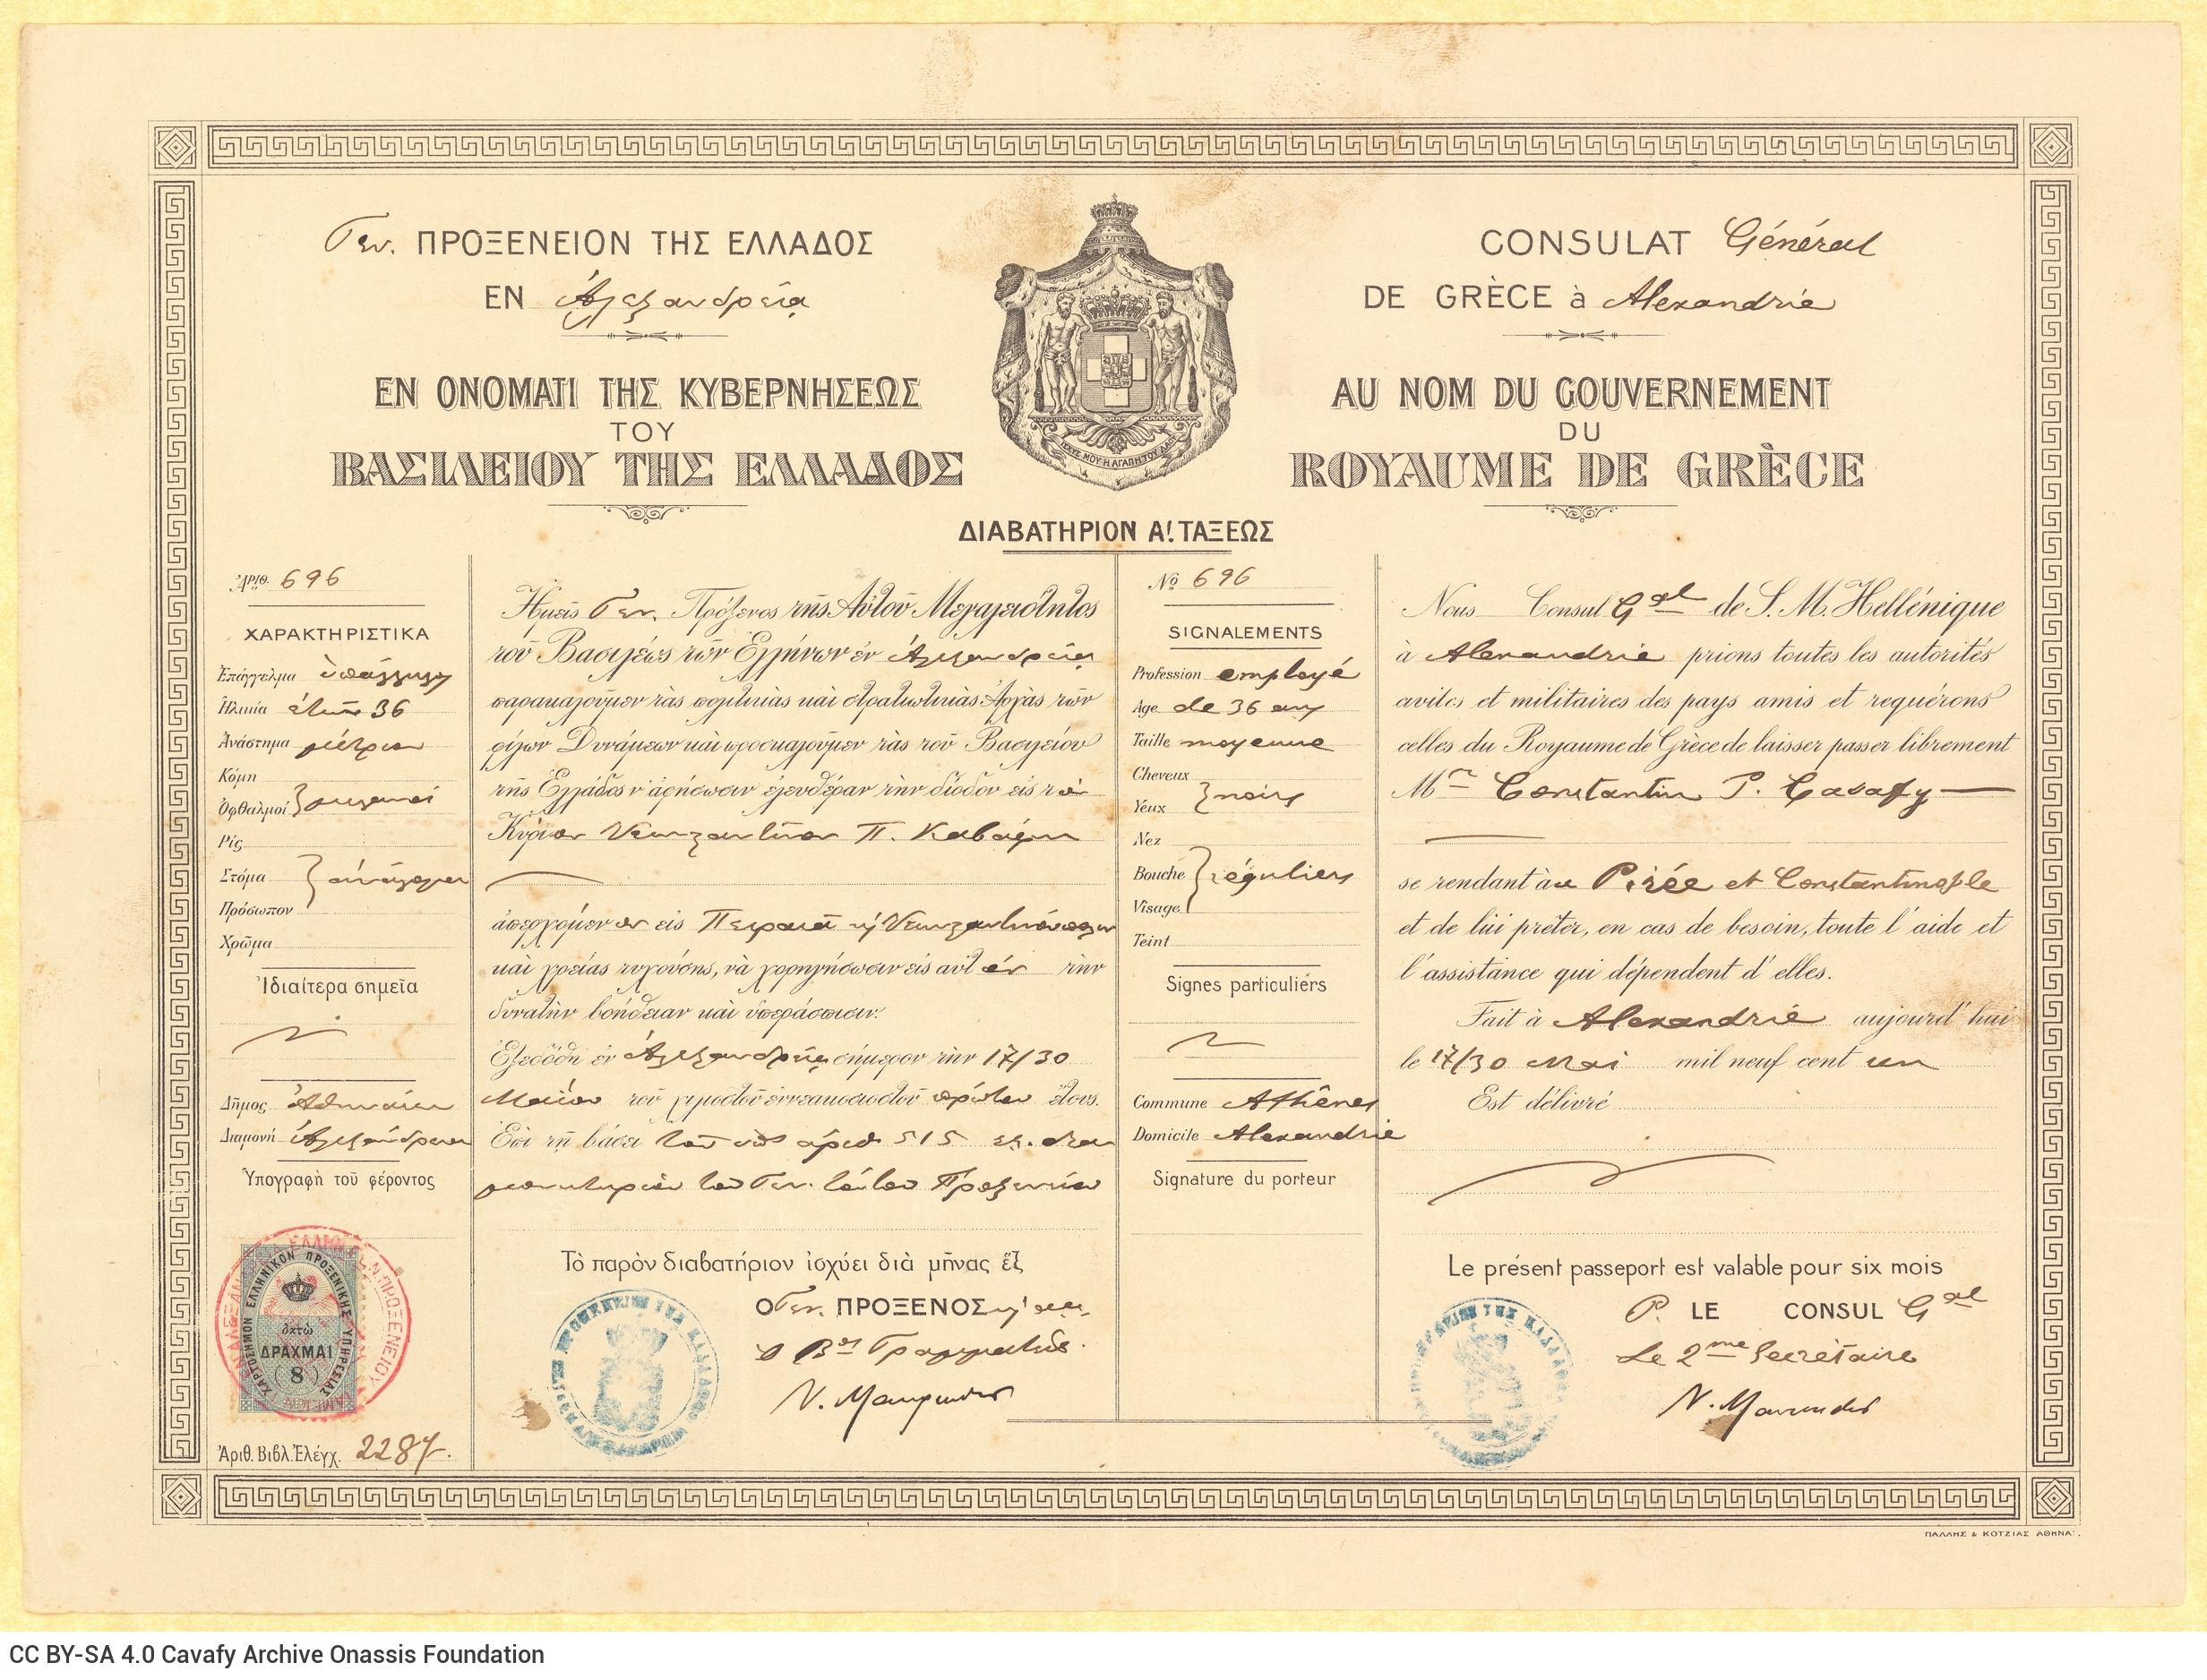 Διαβατήριο Α΄ τάξεως του Καβάφη, το οποίο εκδόθηκε στην Αλεξάνδρεια 